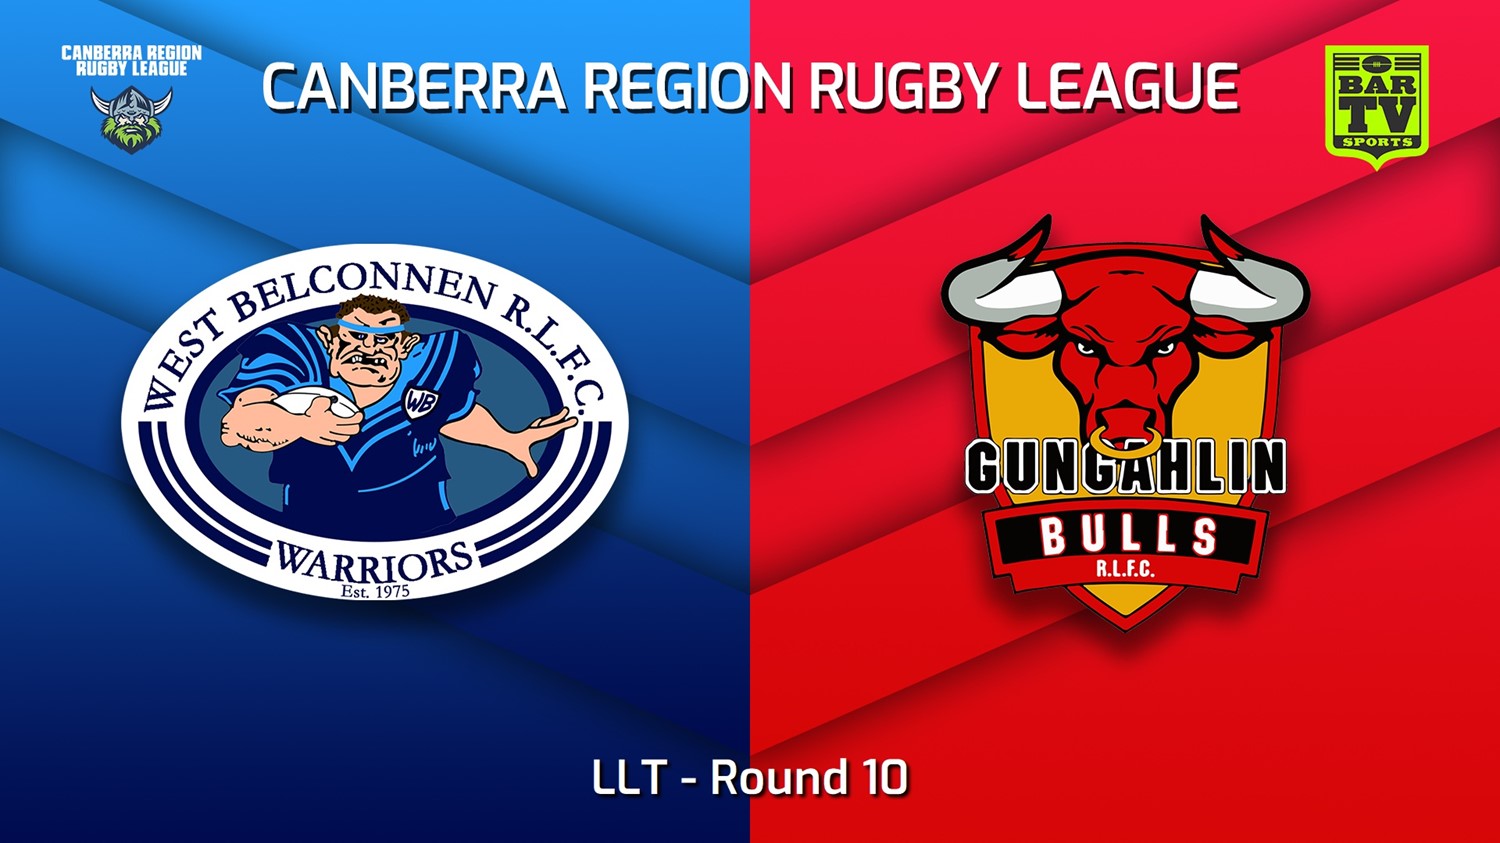 220625-Canberra Round 10 - LLT - West Belconnen Warriors v Gungahlin Bulls Slate Image